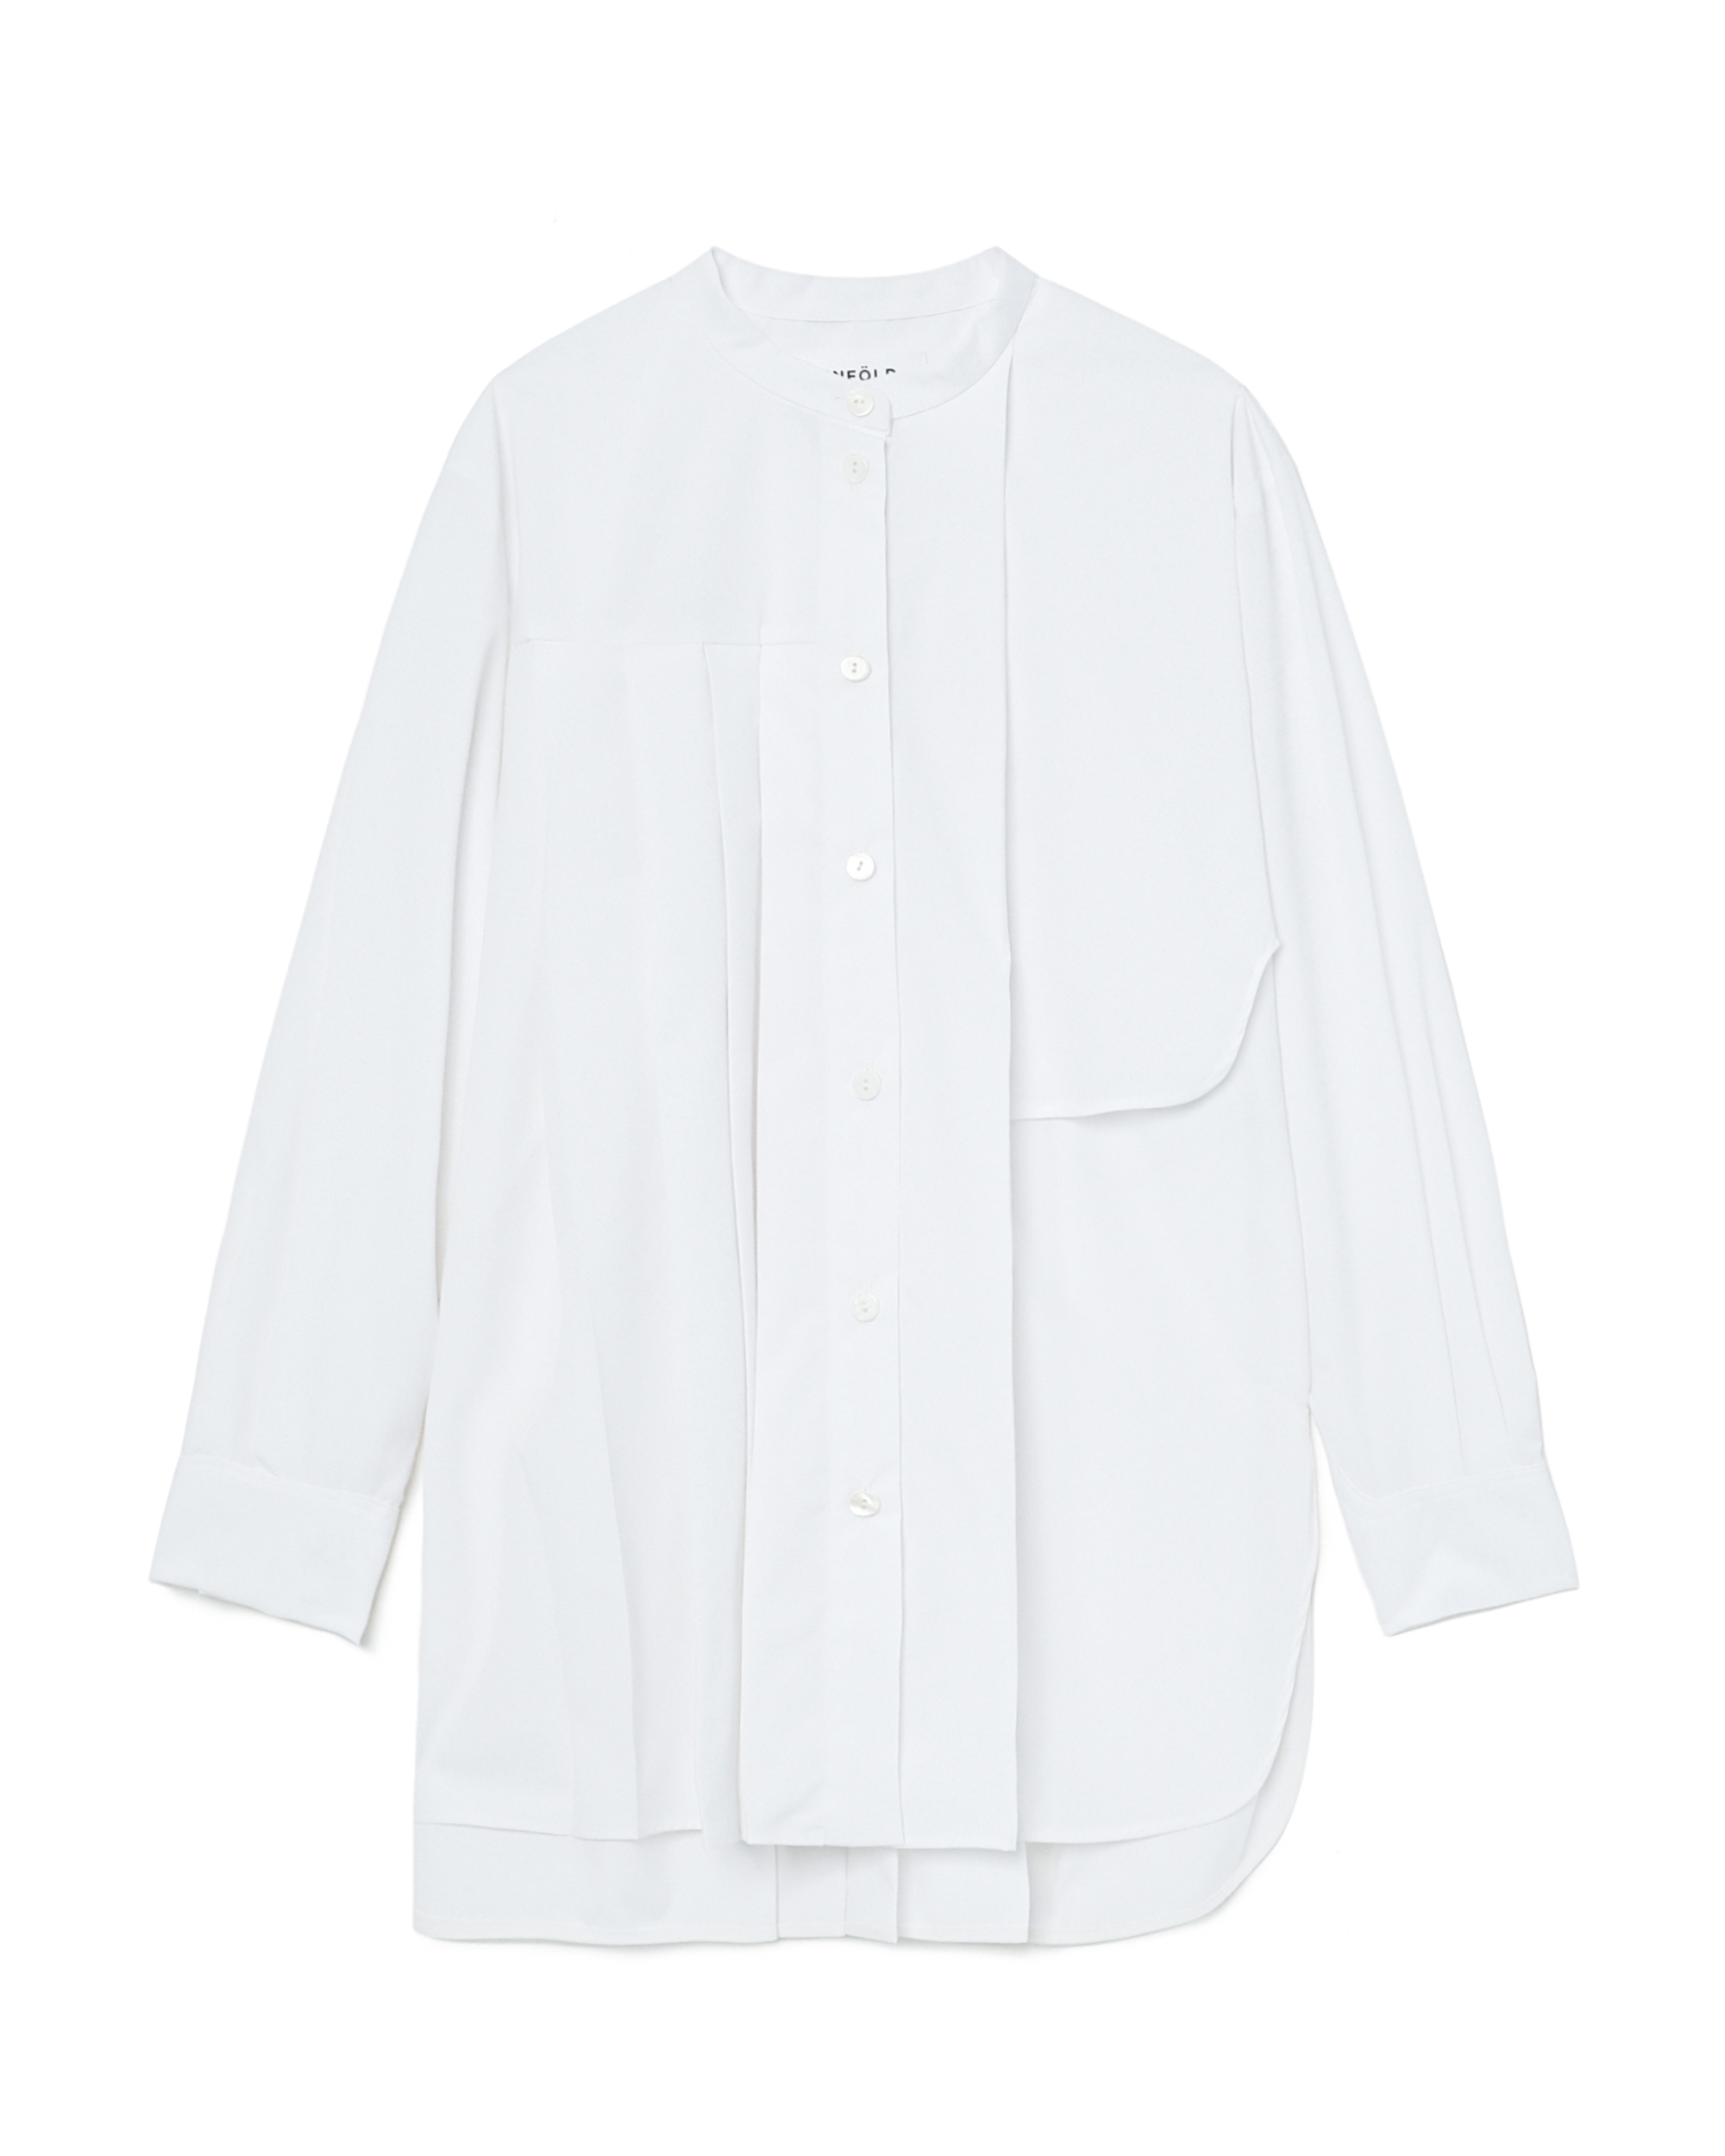 ENFÖLD Asymmetric blouse | ITeSHOP